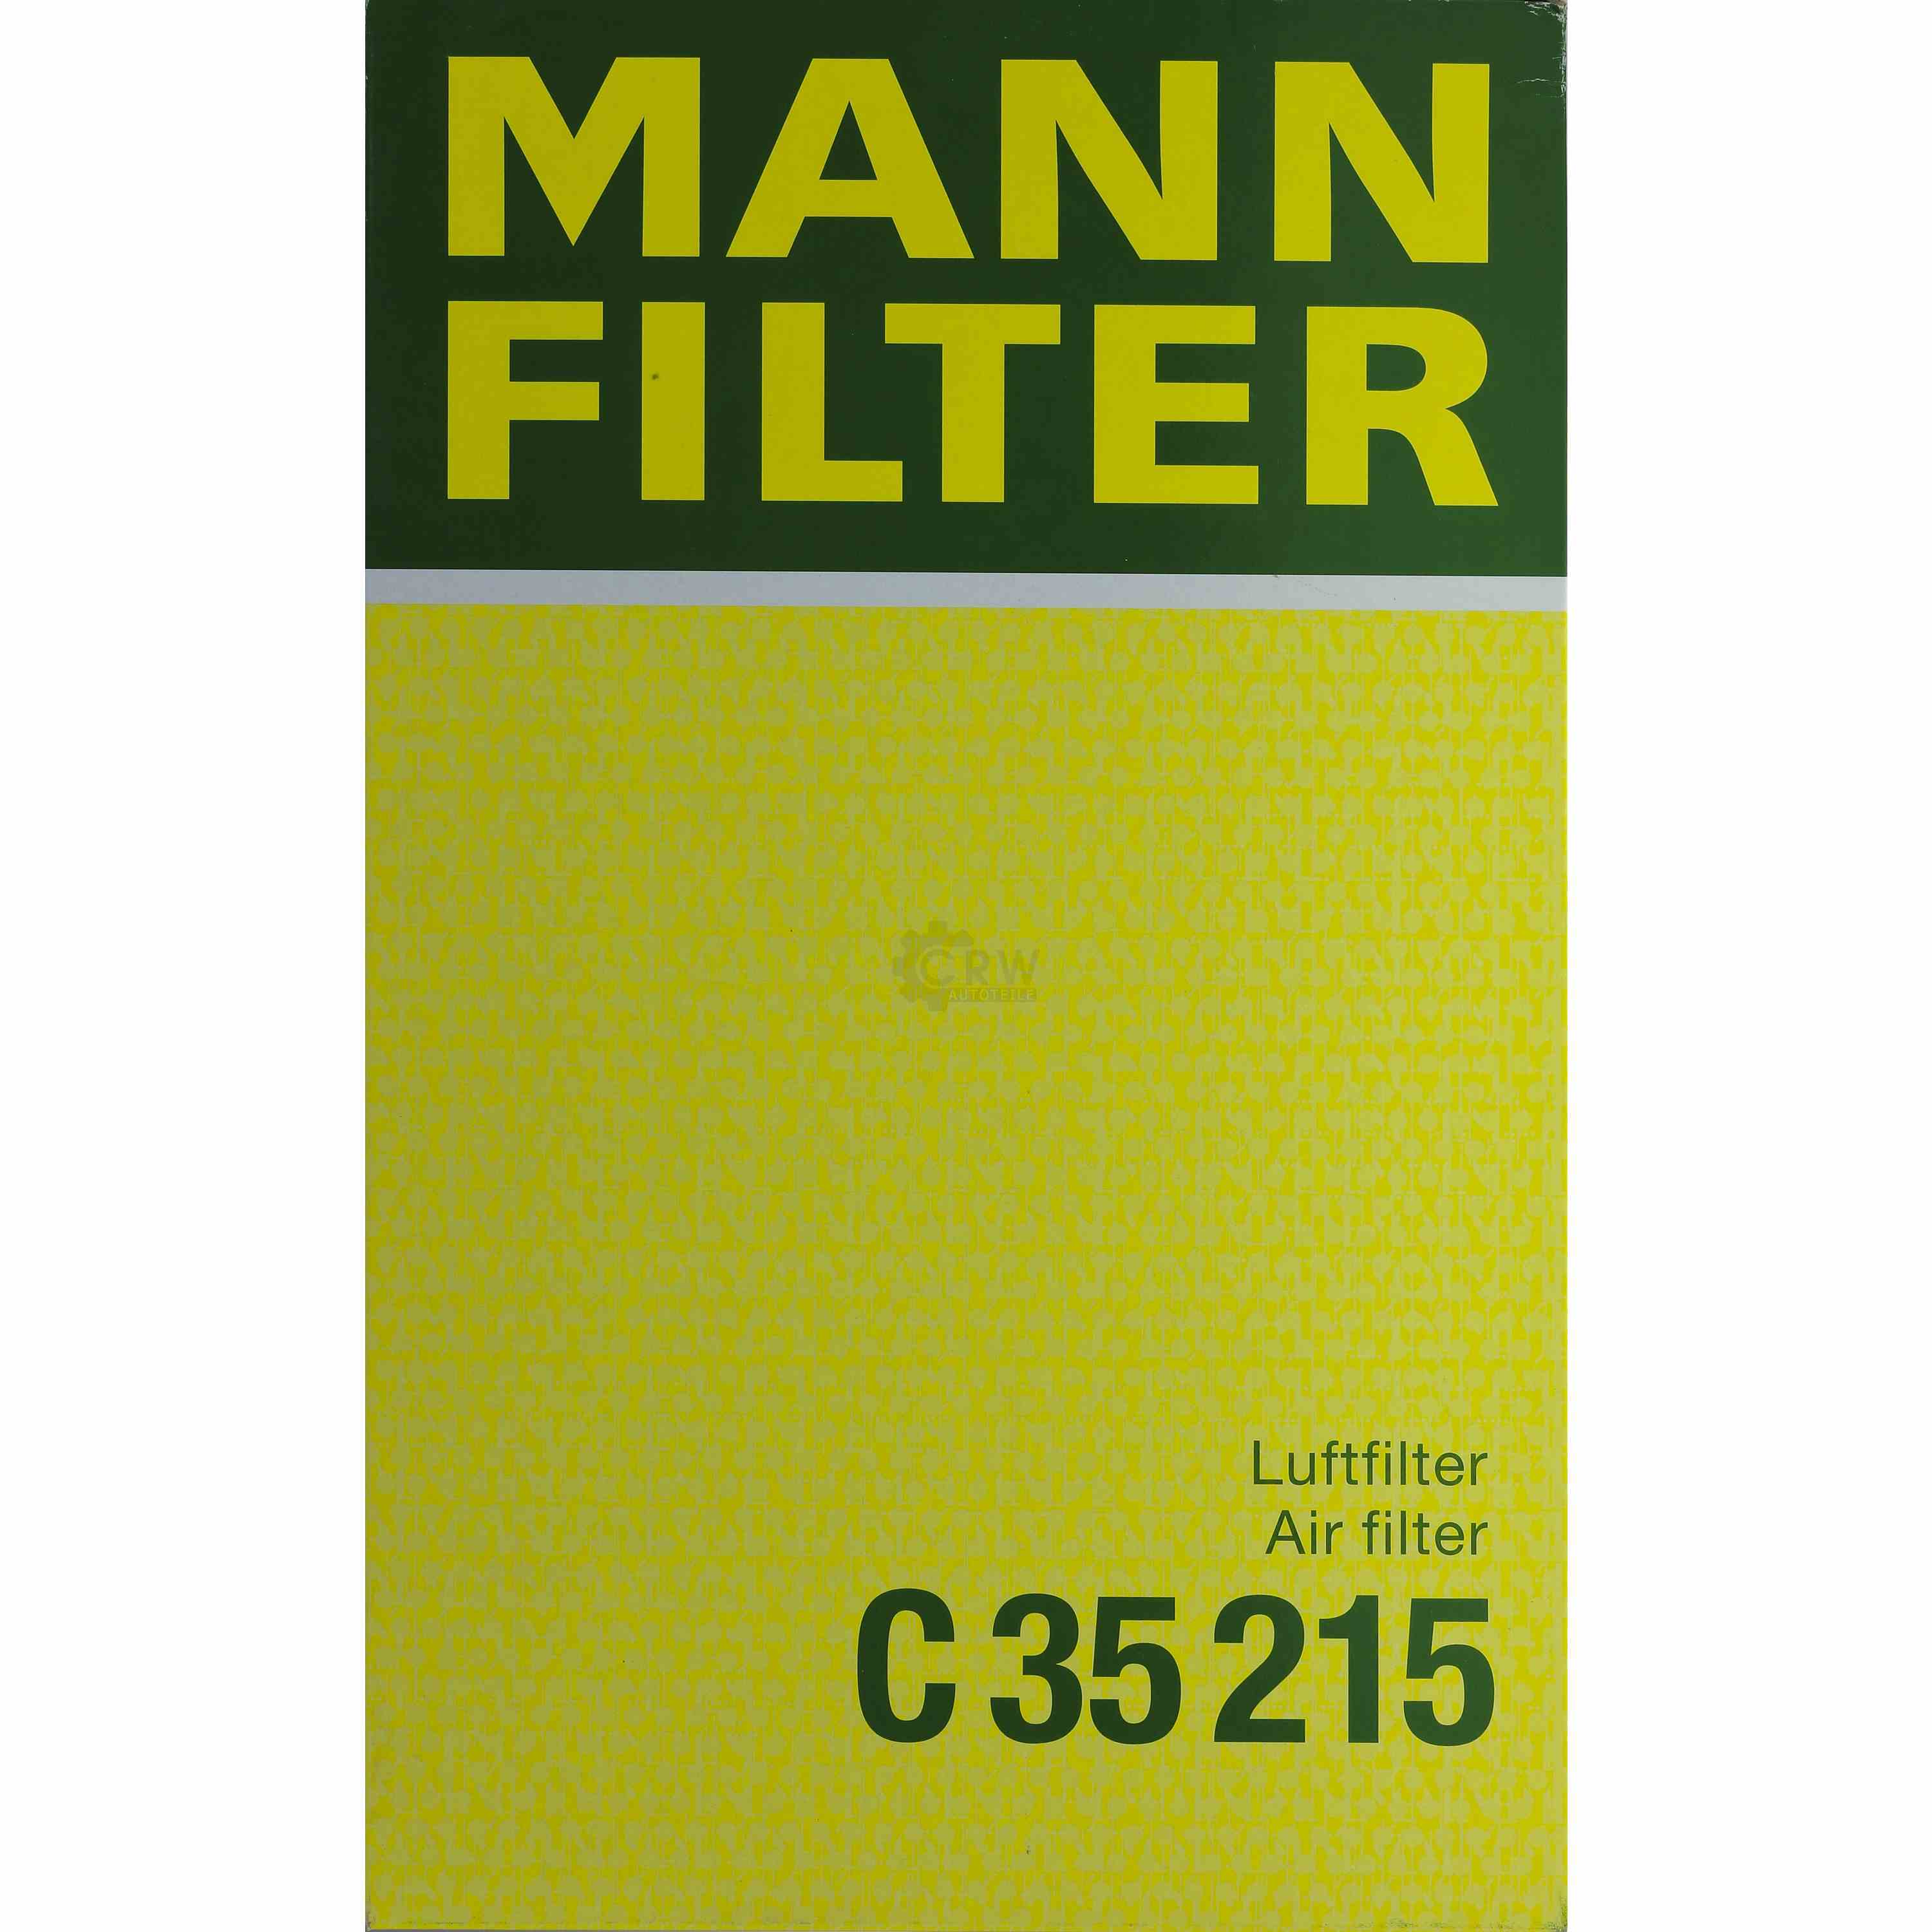 MANN-FILTER Luftfilter für Volvo S80 I TS XY 2.4 2.0 T 184 3.0 T6 2.9 V70 II